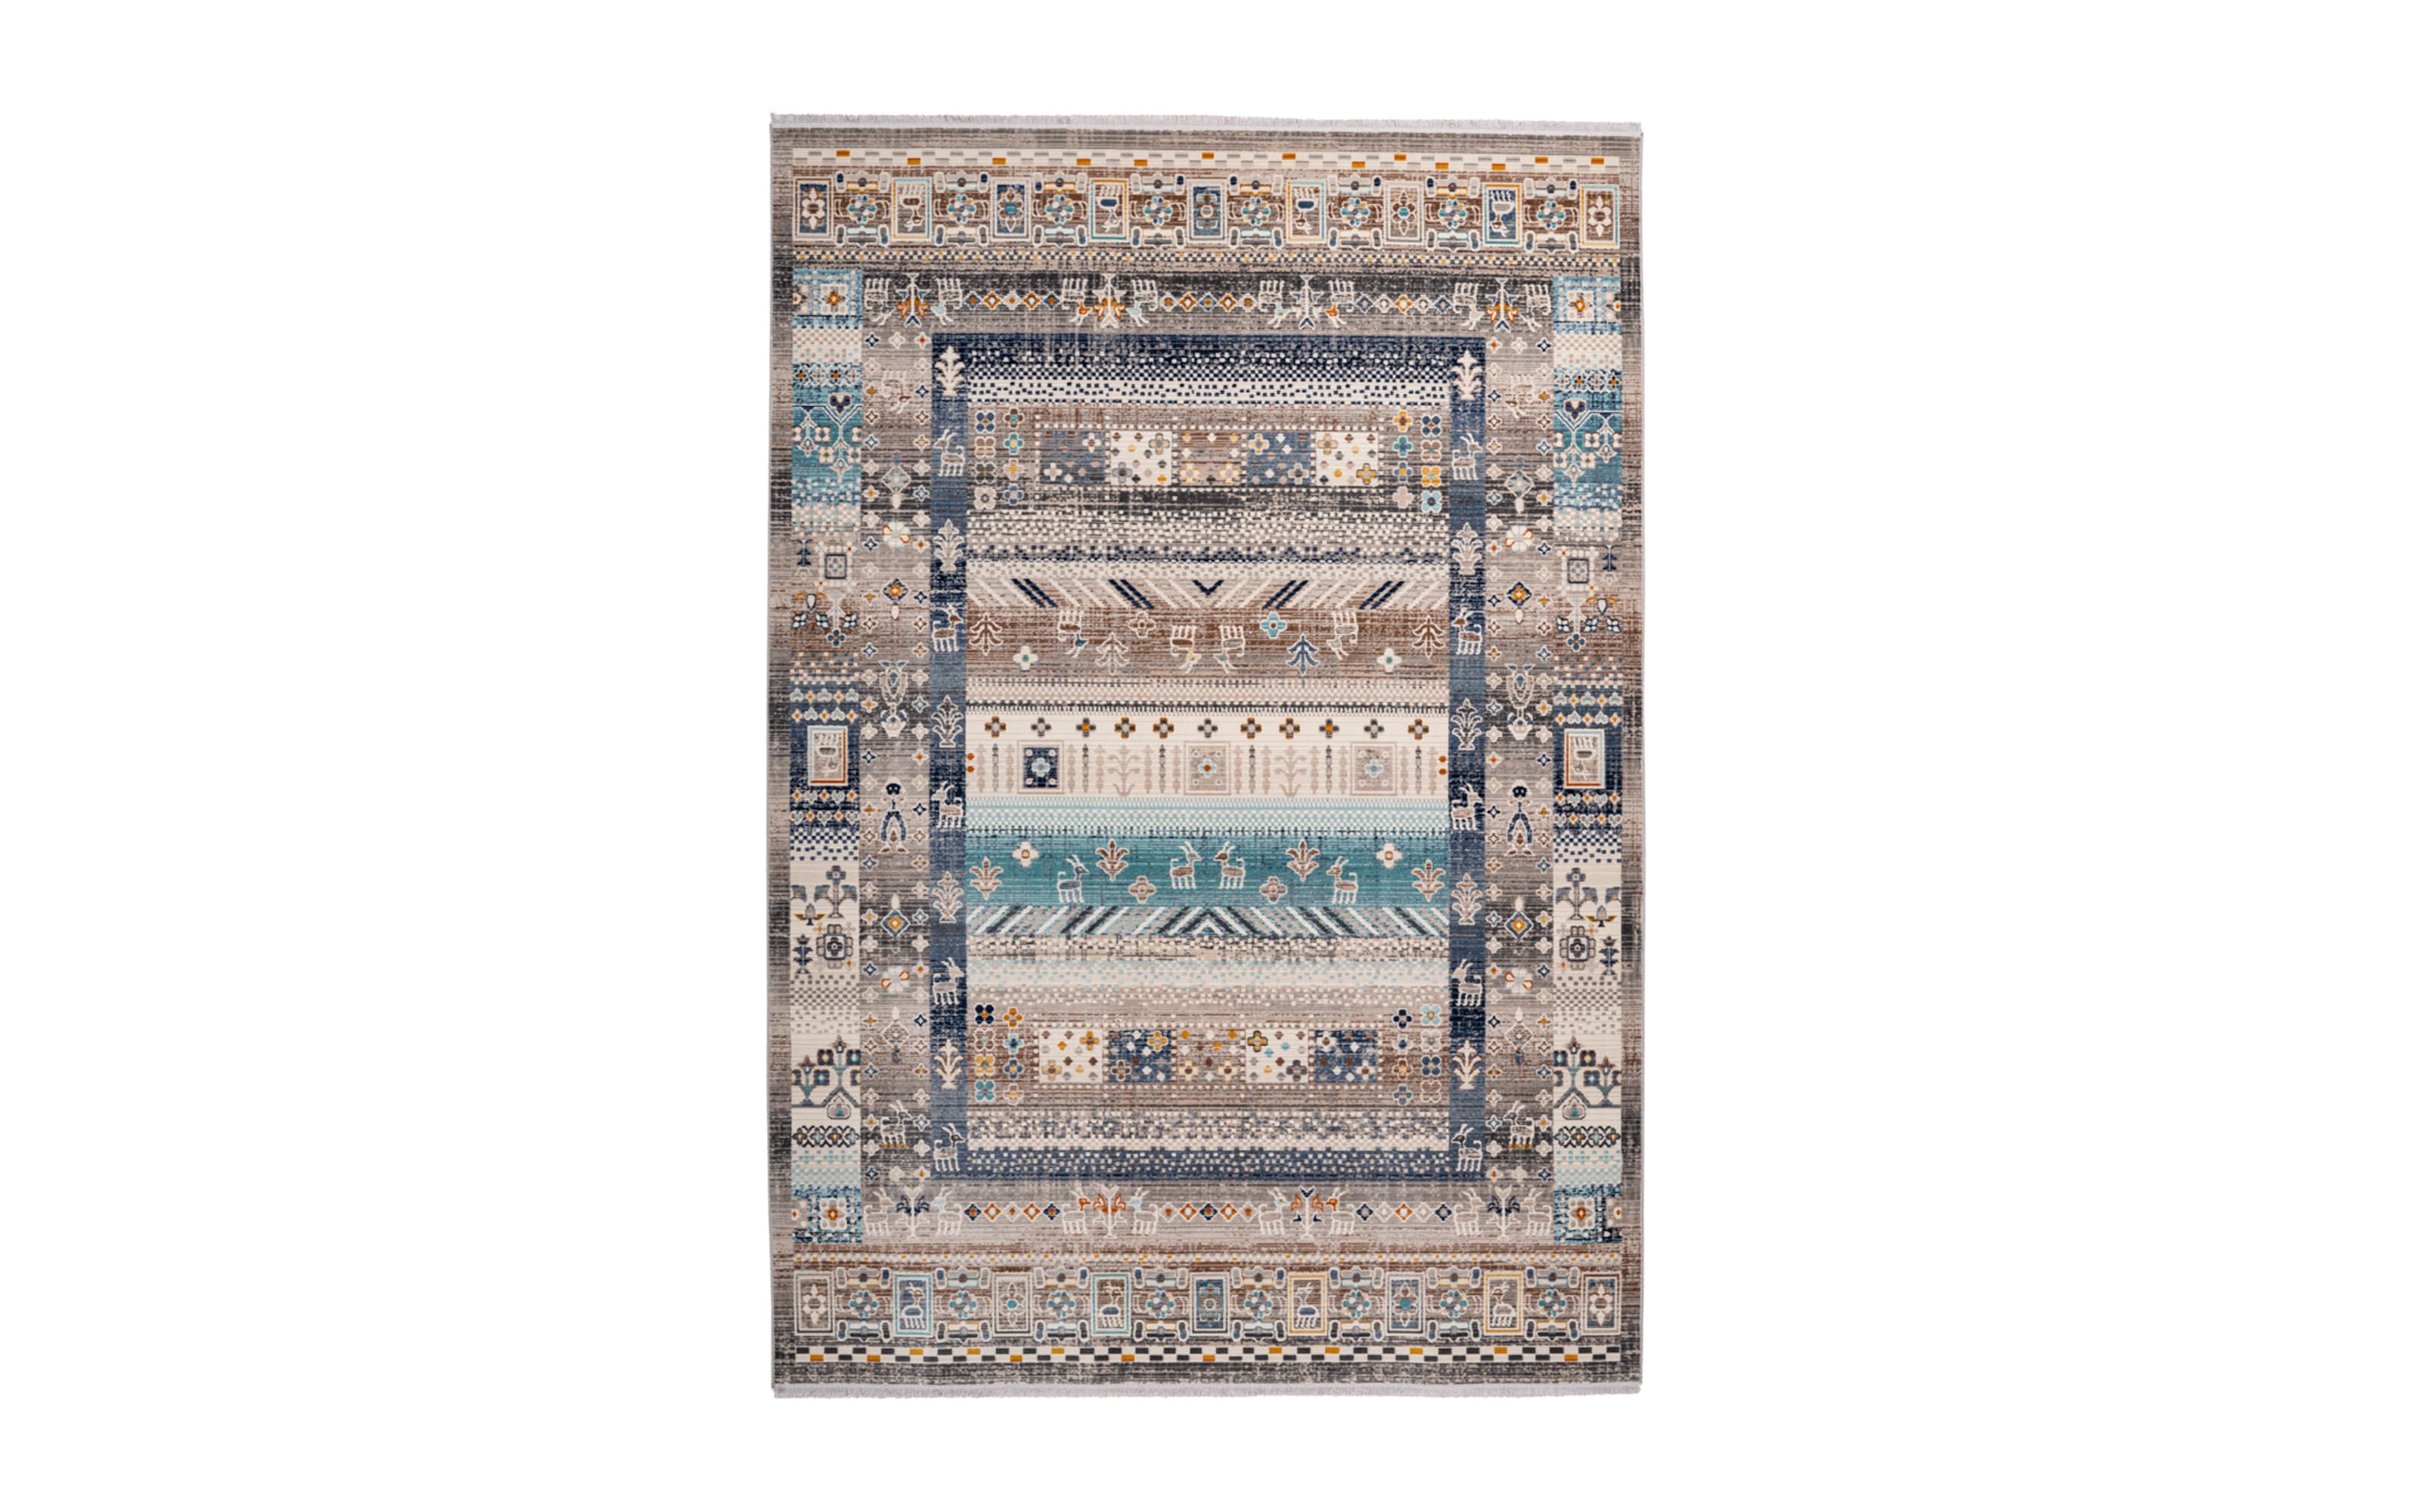 Teppich Anouk 525 in braun/blau, 200 x 290 cm